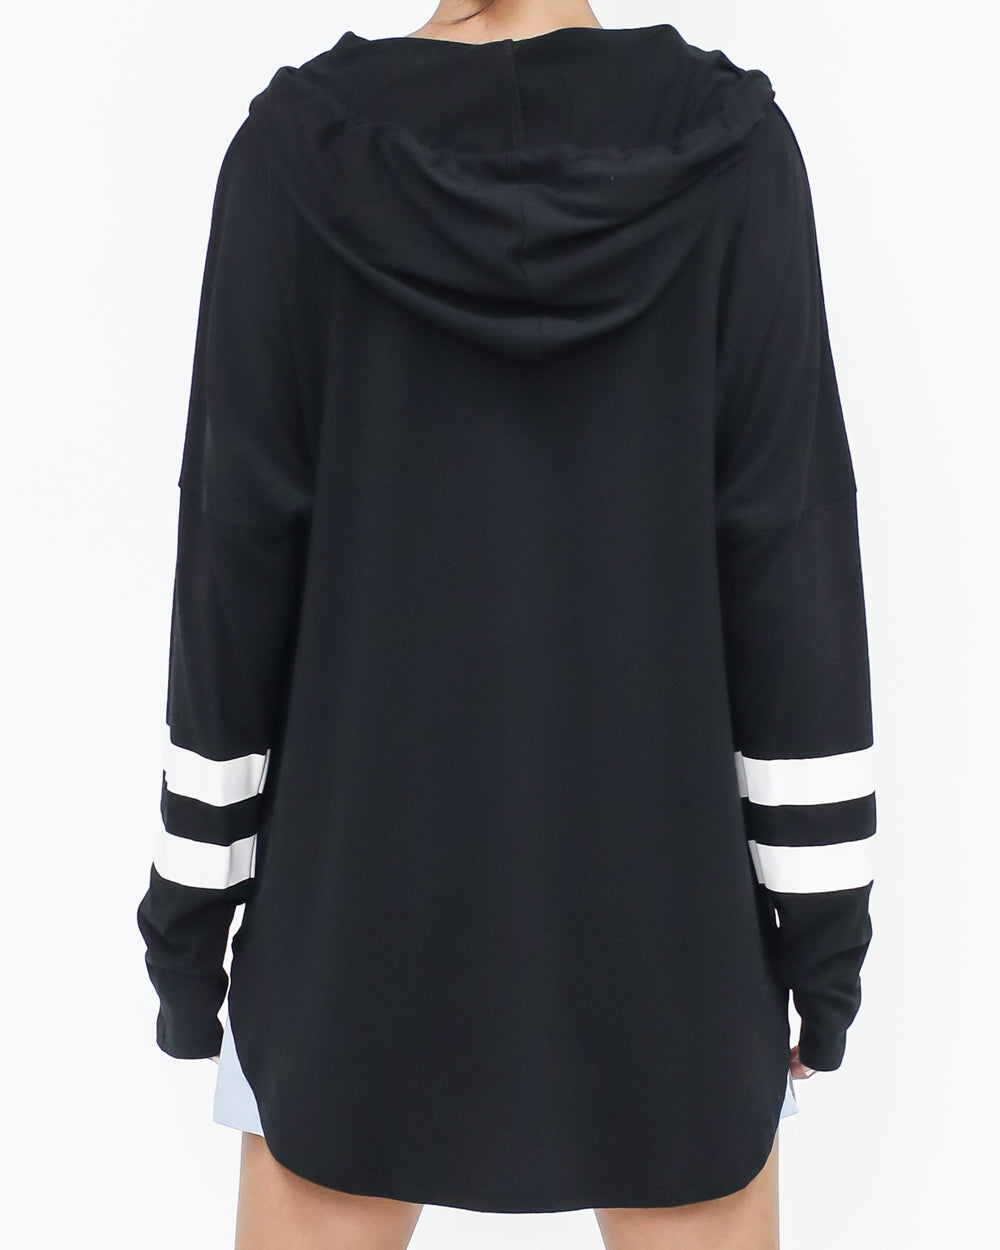 black & ivory stripes hoodie top *pre-order*